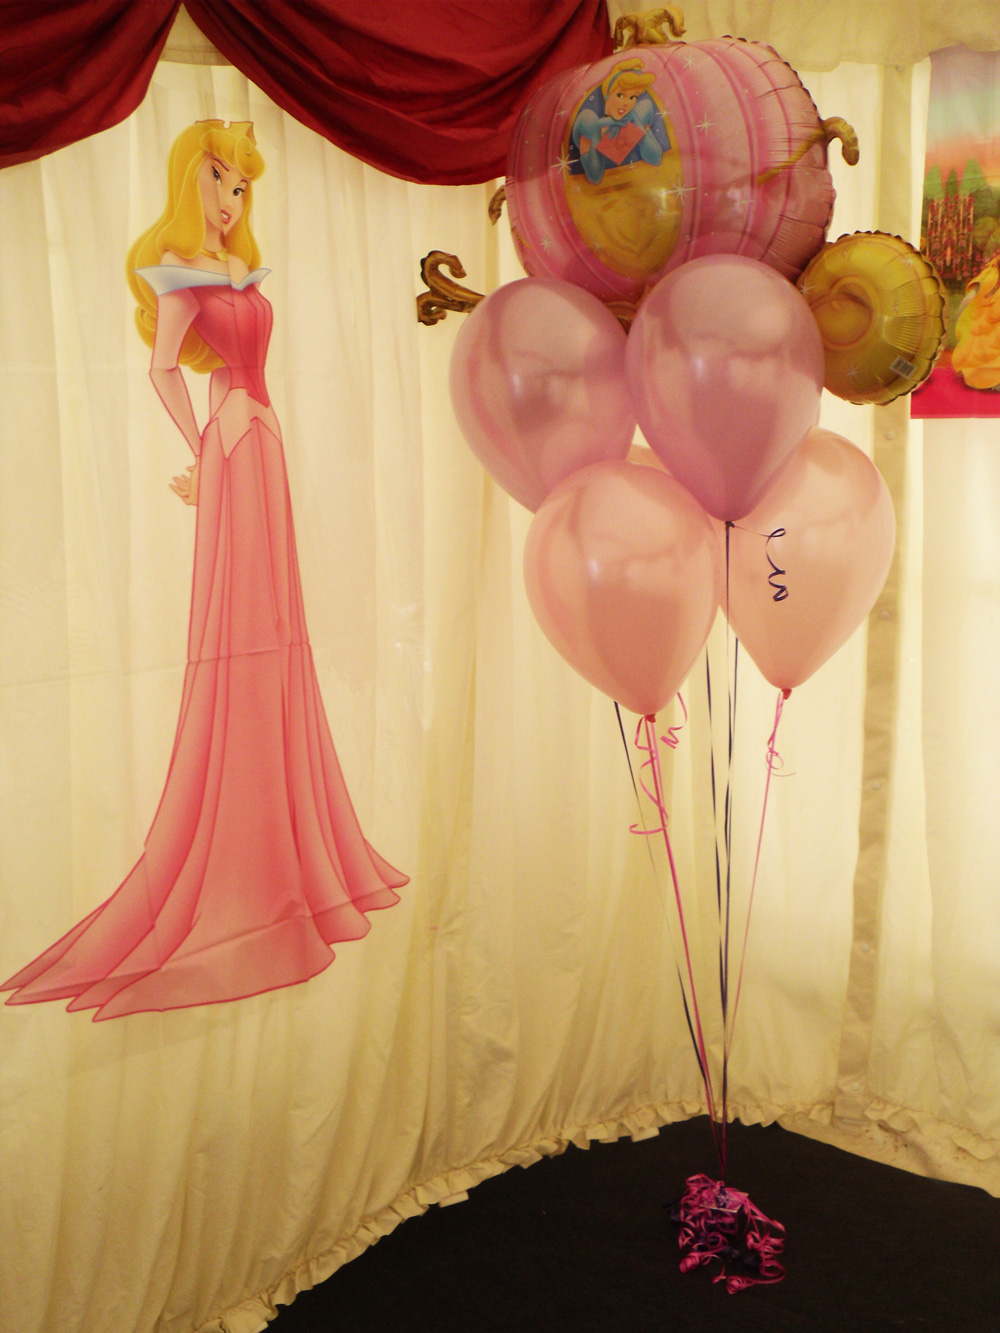 Princess party balloons London 1